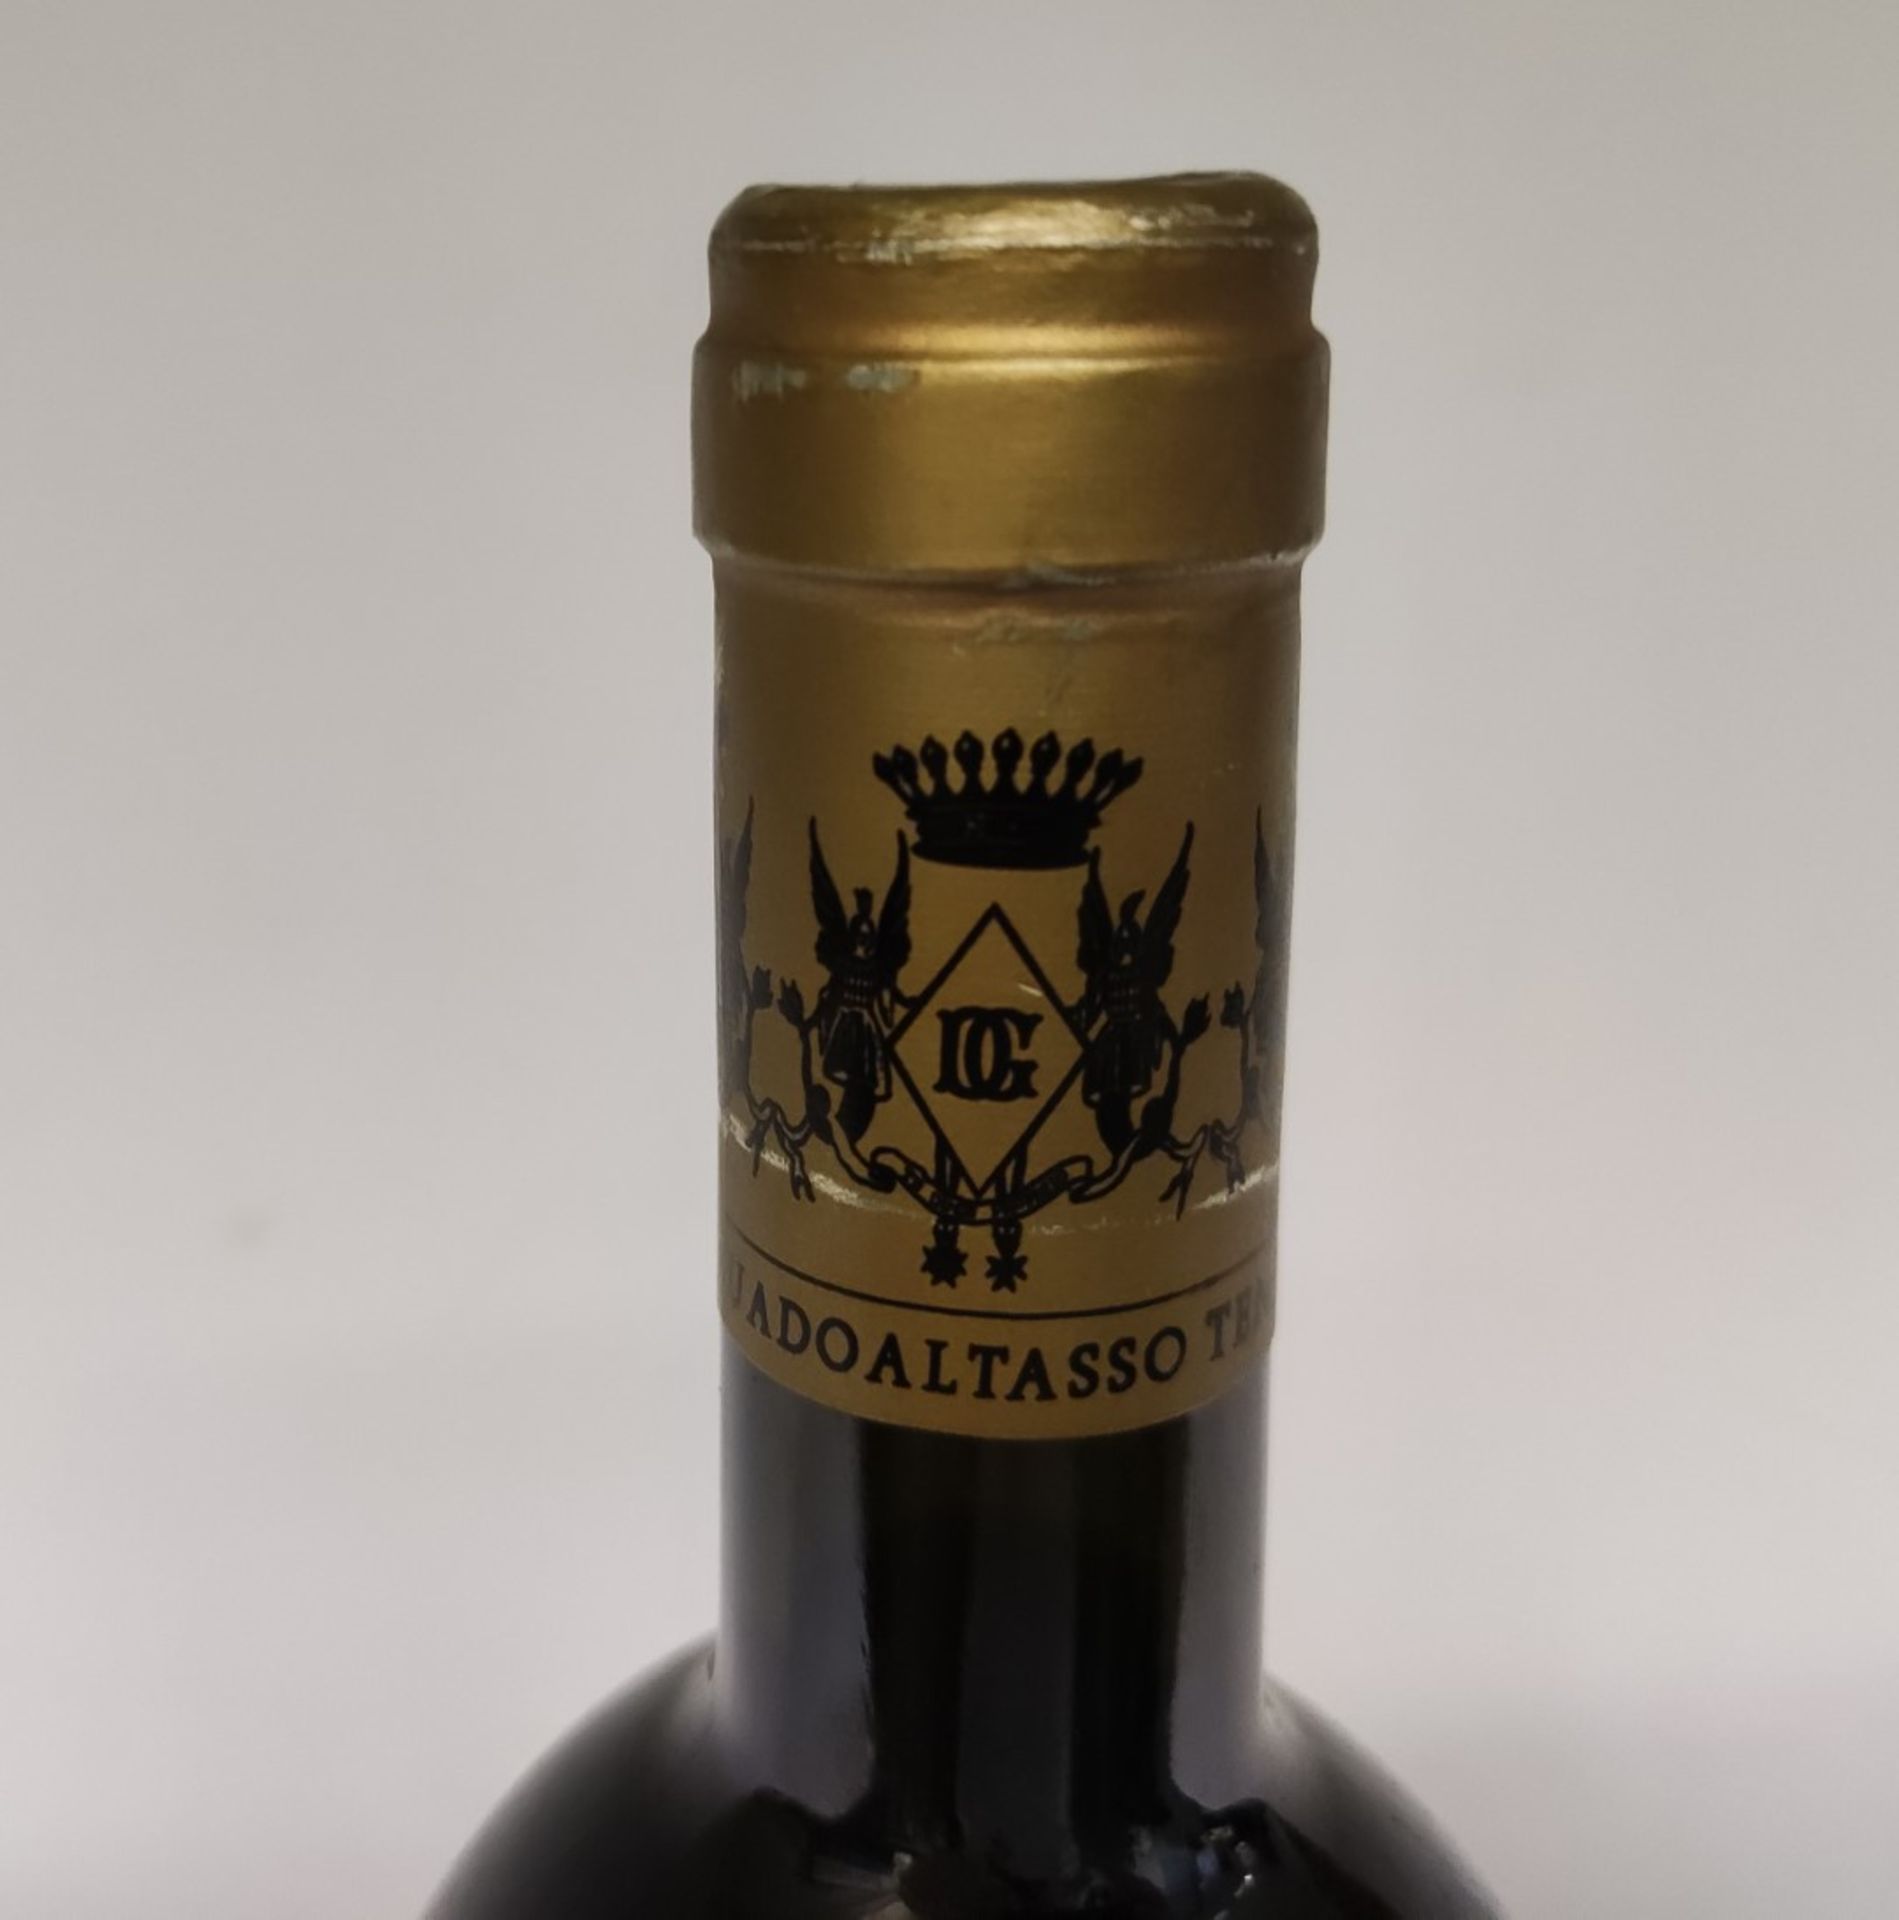 2 x Bottles of 2013 Marchesi Antinori Tenuta Guado Al Tasso Matarocchio Bolgheri Red Wine - RRP £760 - Image 10 of 12